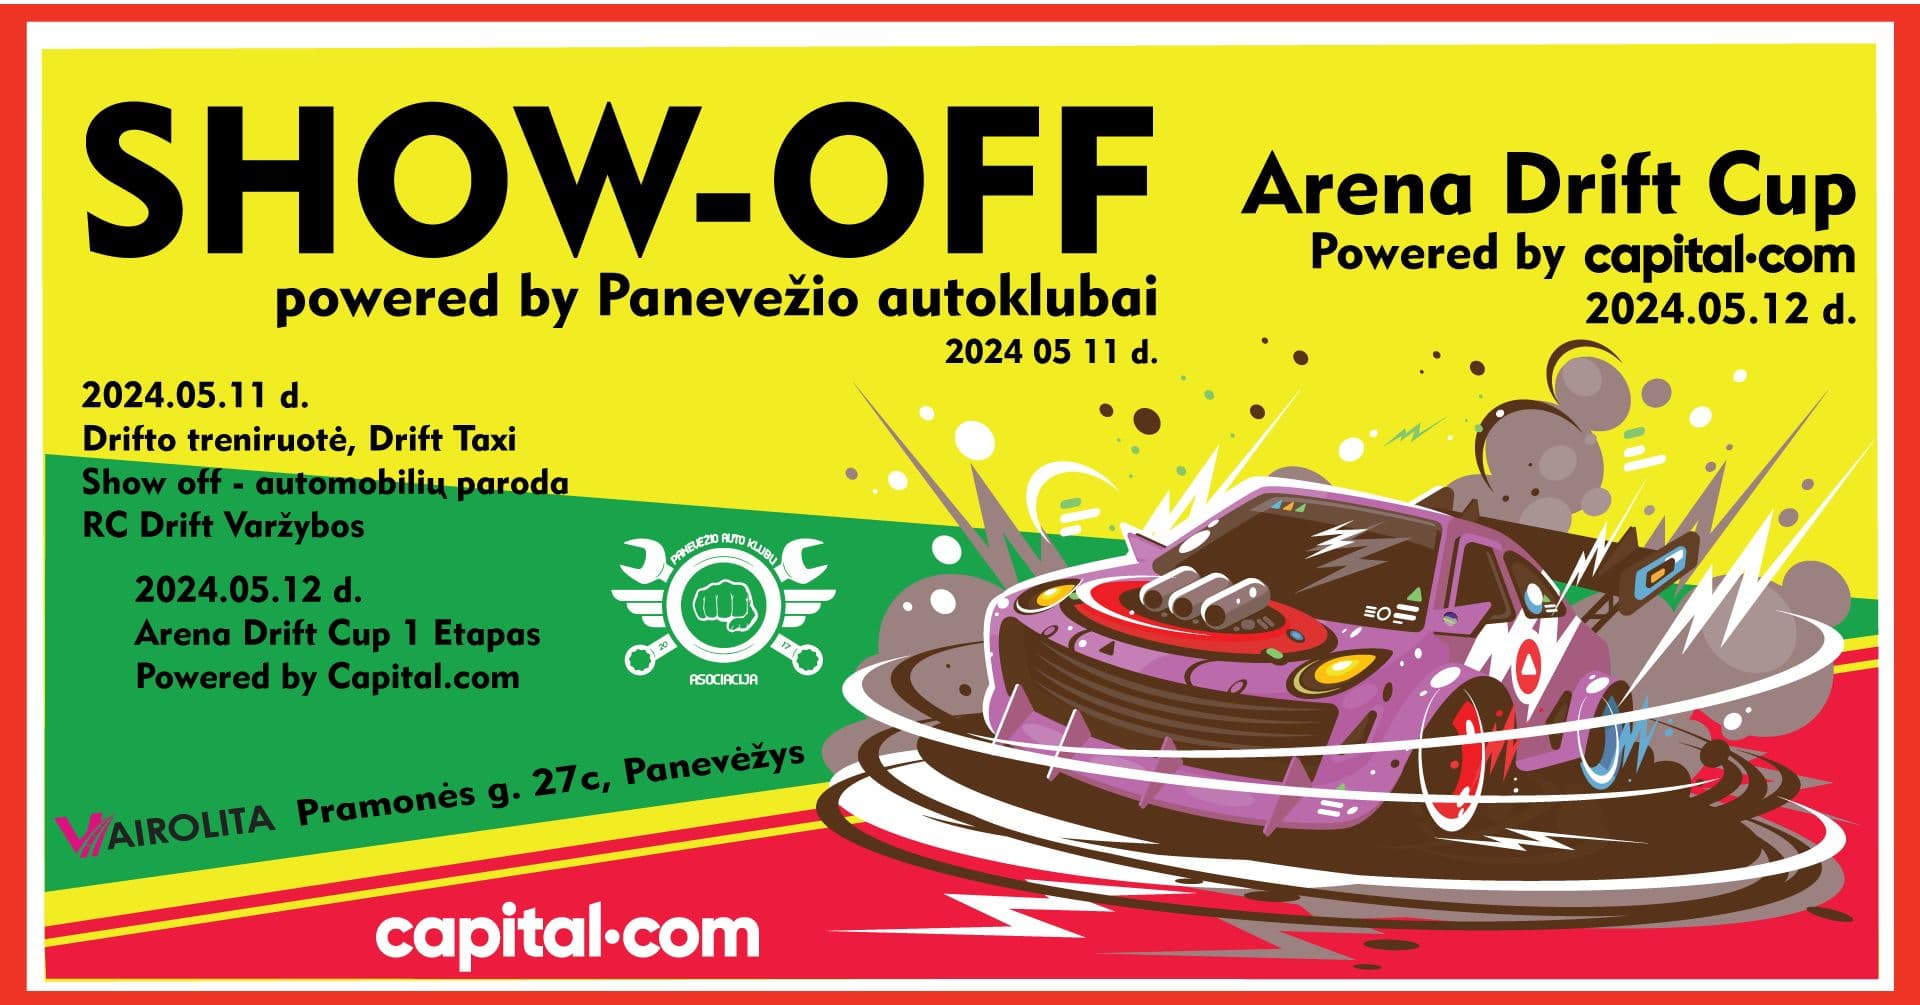 SHOW-OFF powered by Panevėžio autoklubai @ Arena Drift Cup